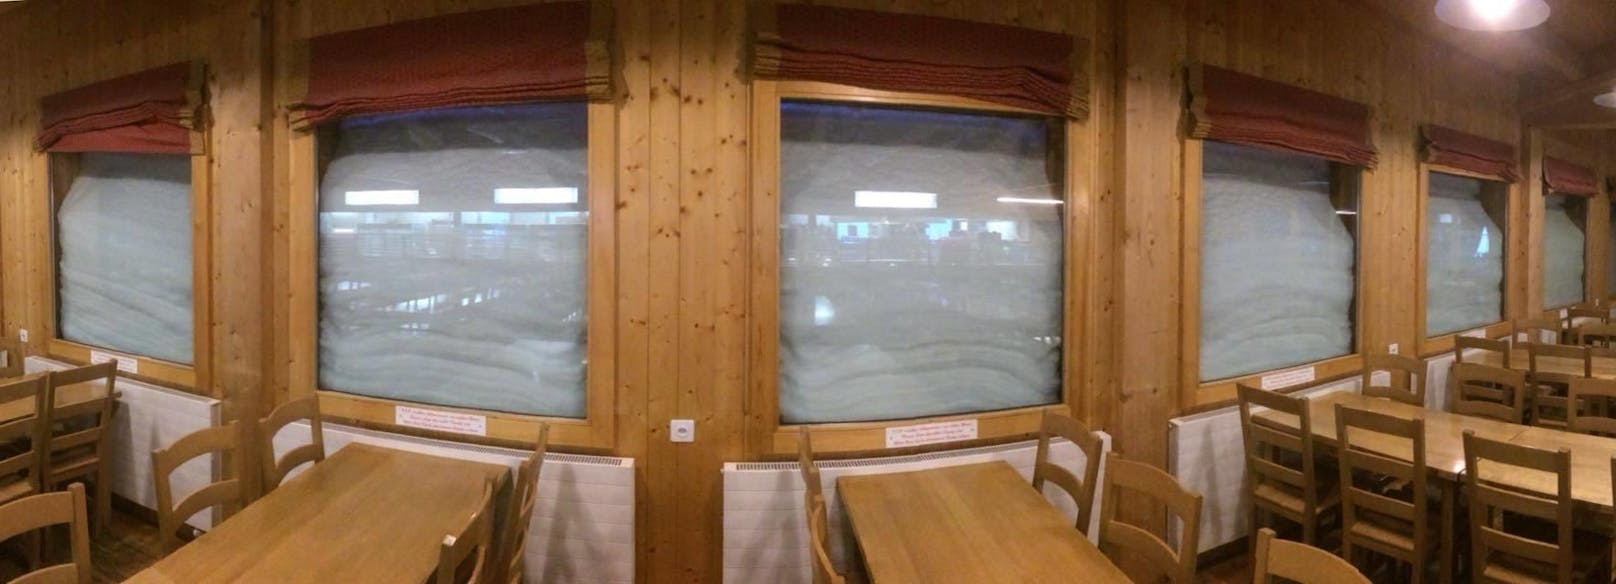 Das Restaurant Pas-de-Maimbré im Unterwallis (Schweiz) ist völlig zugeschneit. Der Schnee türmt sich bis zum Dach. Bei der Wand hat er sich angehäuft und ist dort drei Meter hoch.